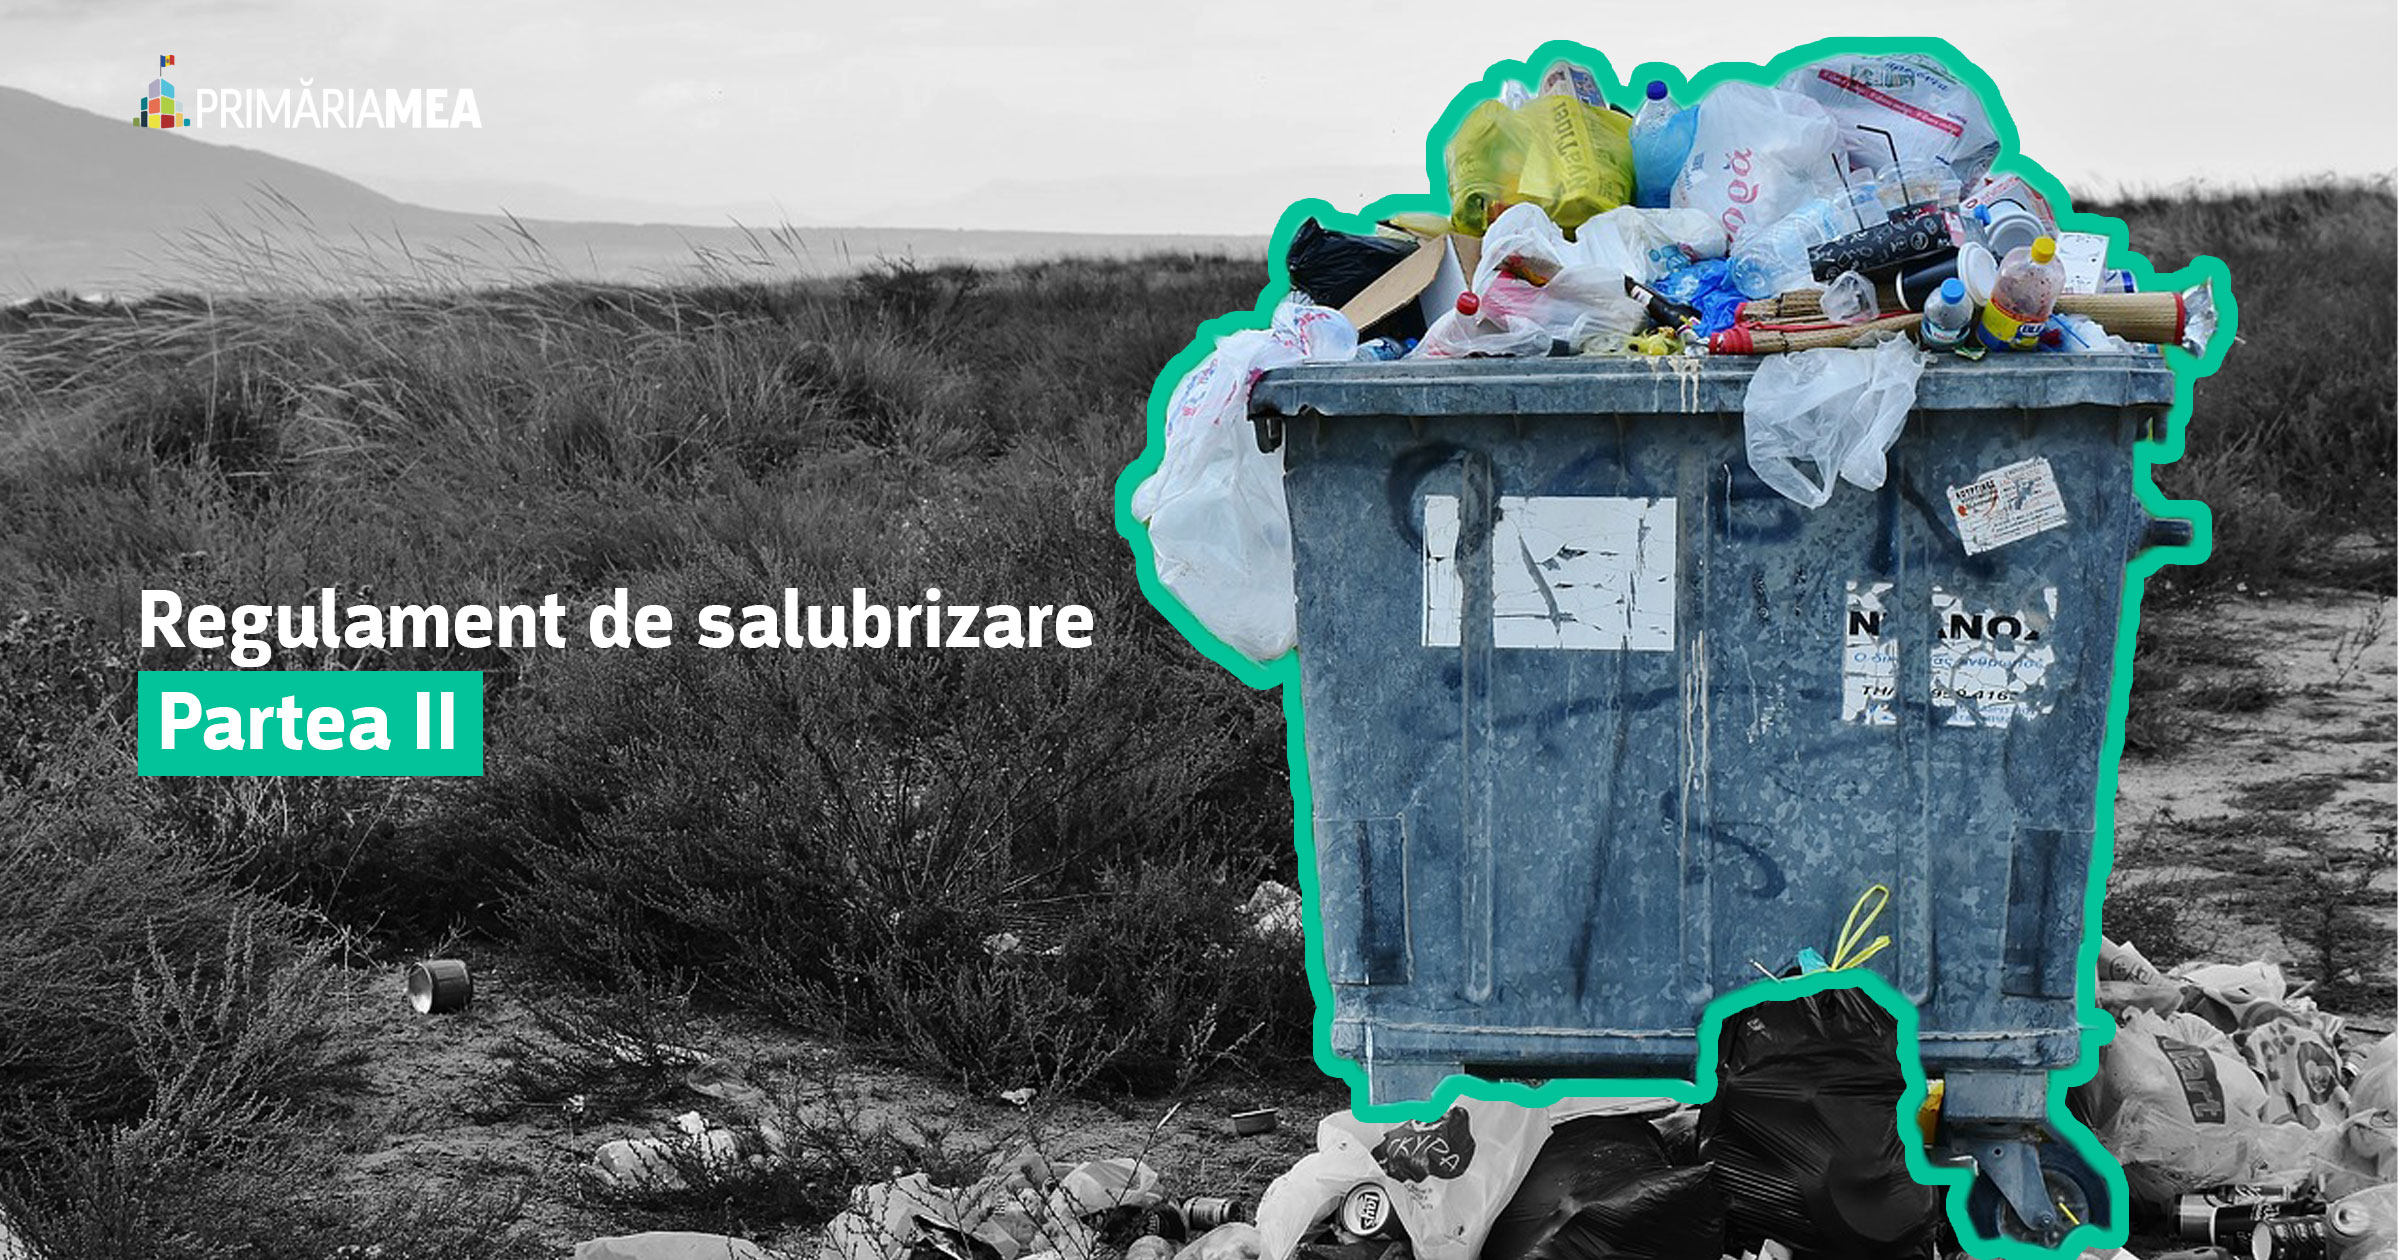 Noi reguli de curățenie: deșeuri medicale și electronice și declarațiile autorităților Image